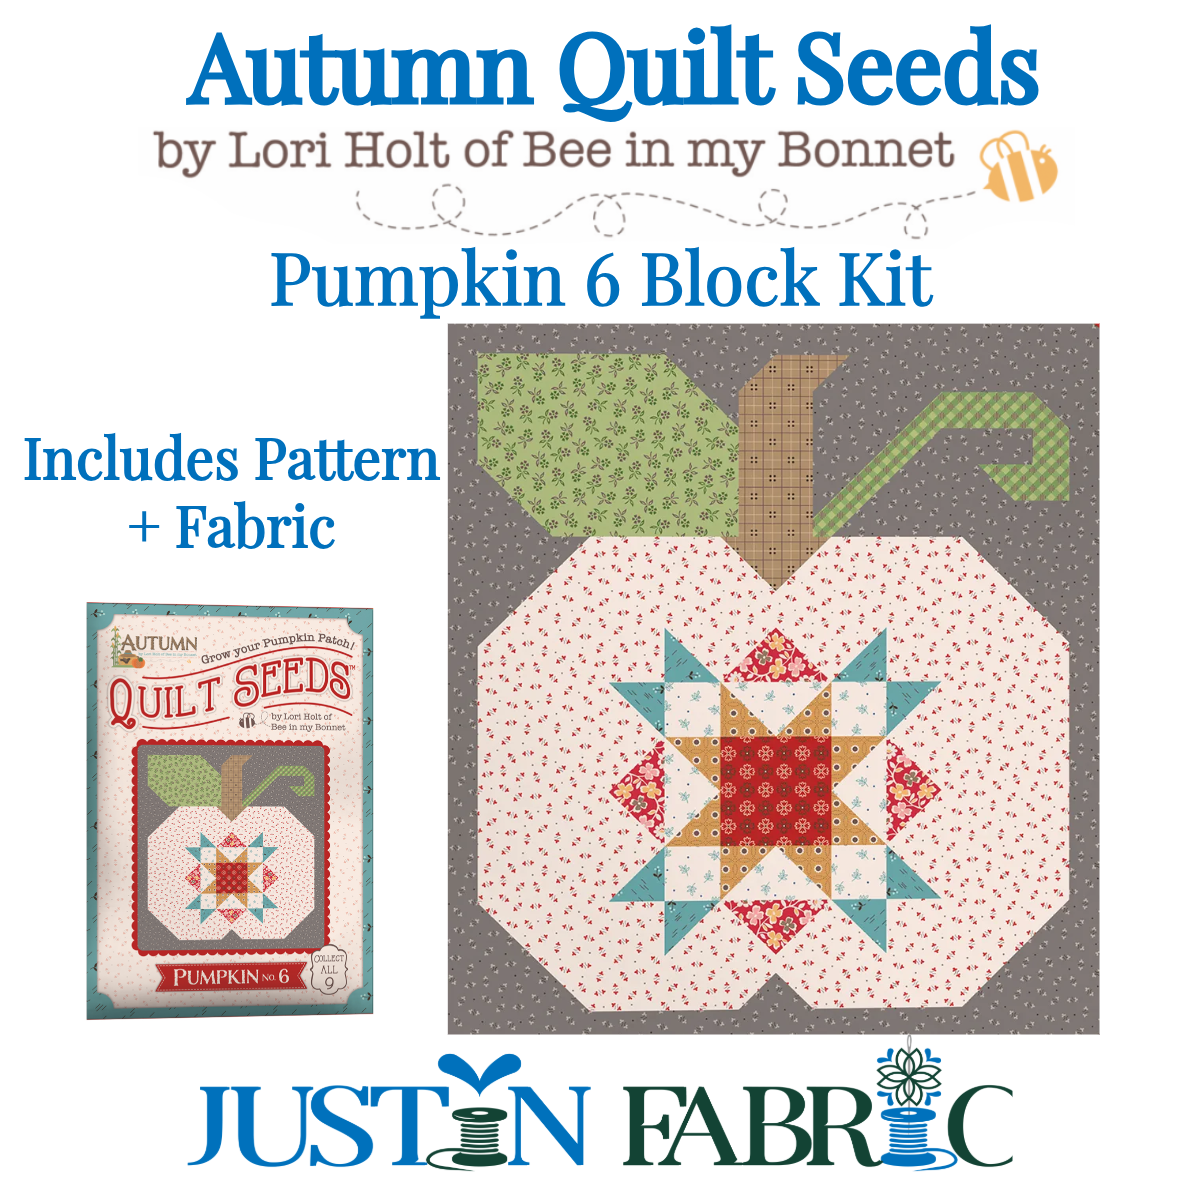 Autumn Quilt Seeds Pumpkin 6 Block Kit Featuring Autumn by Lori Holt